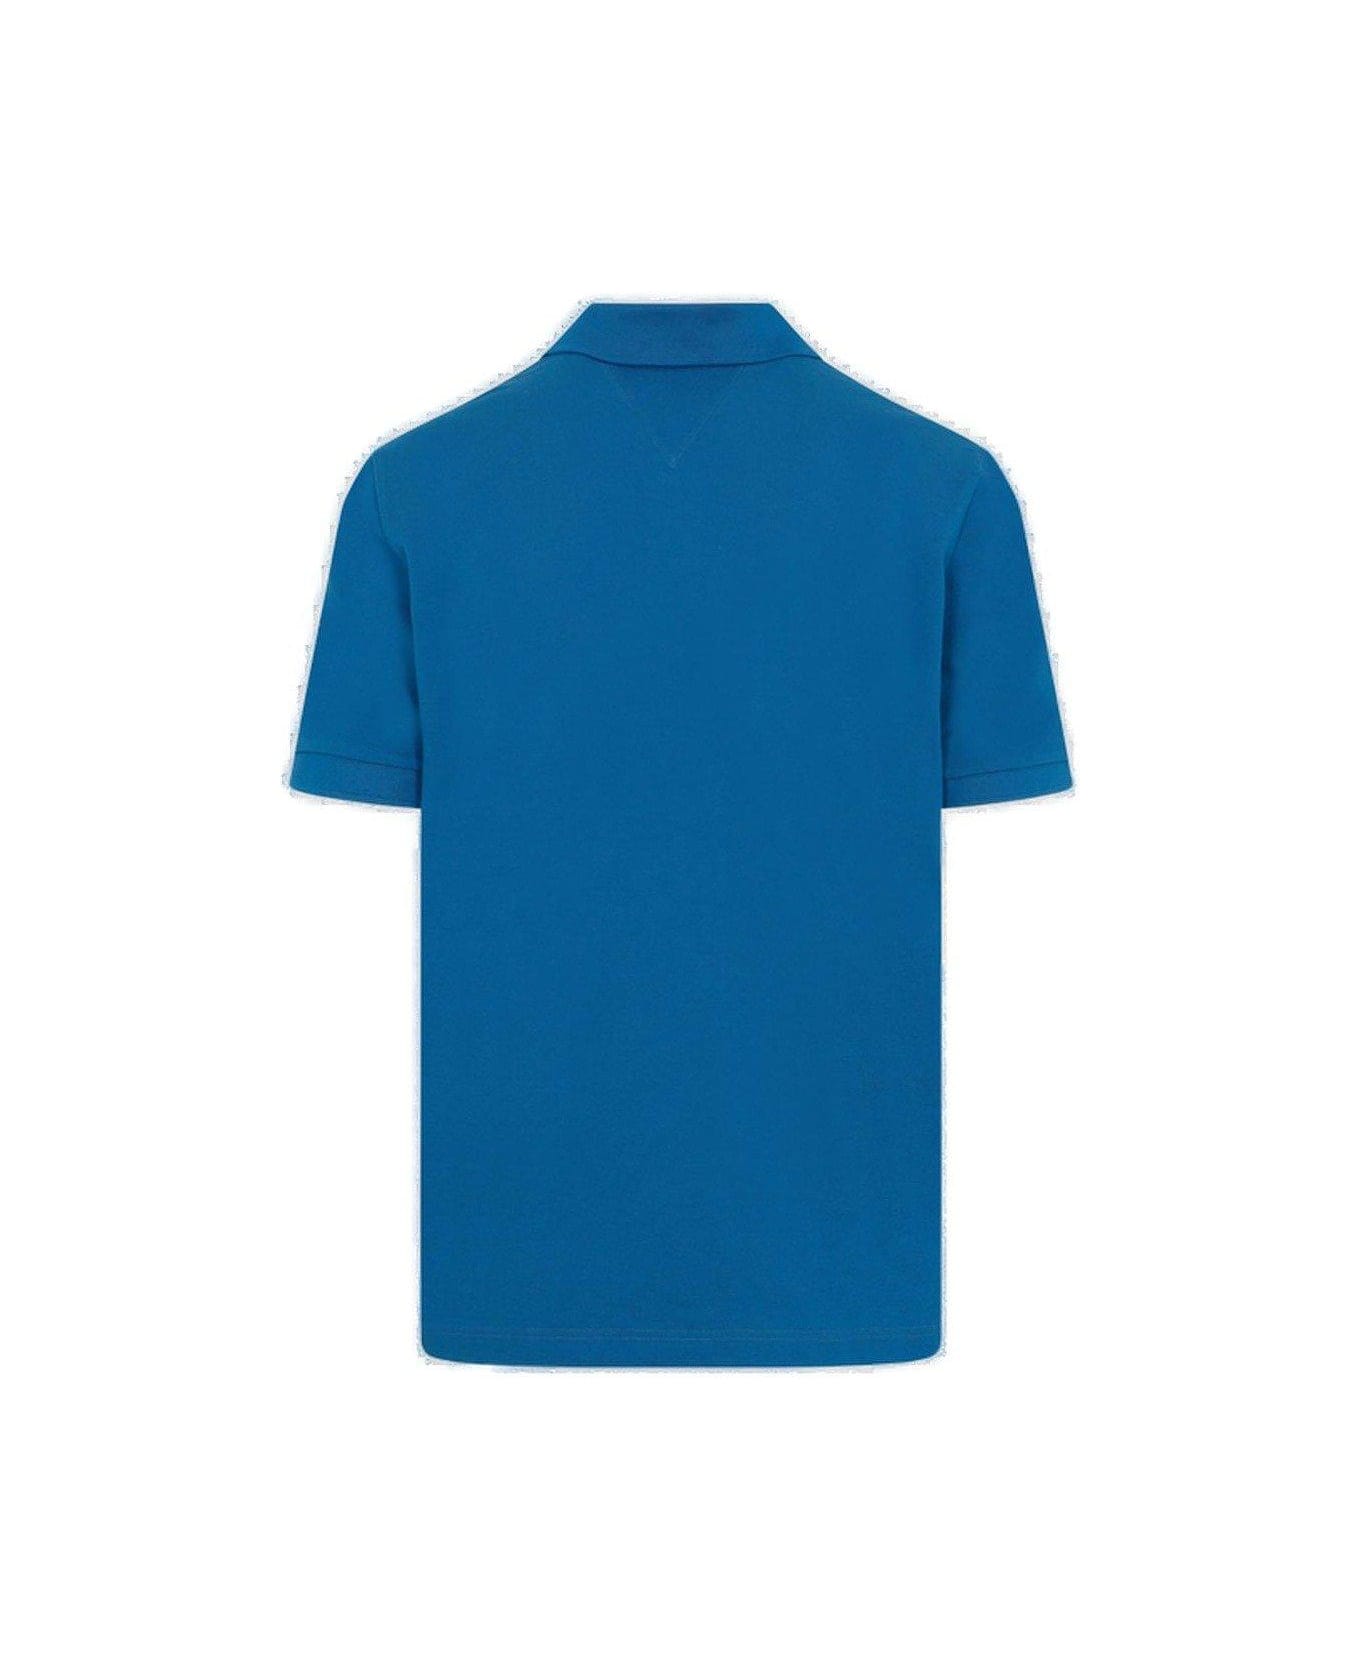 Bottega Veneta Short-sleeved Polo Shirt - PACIFIC